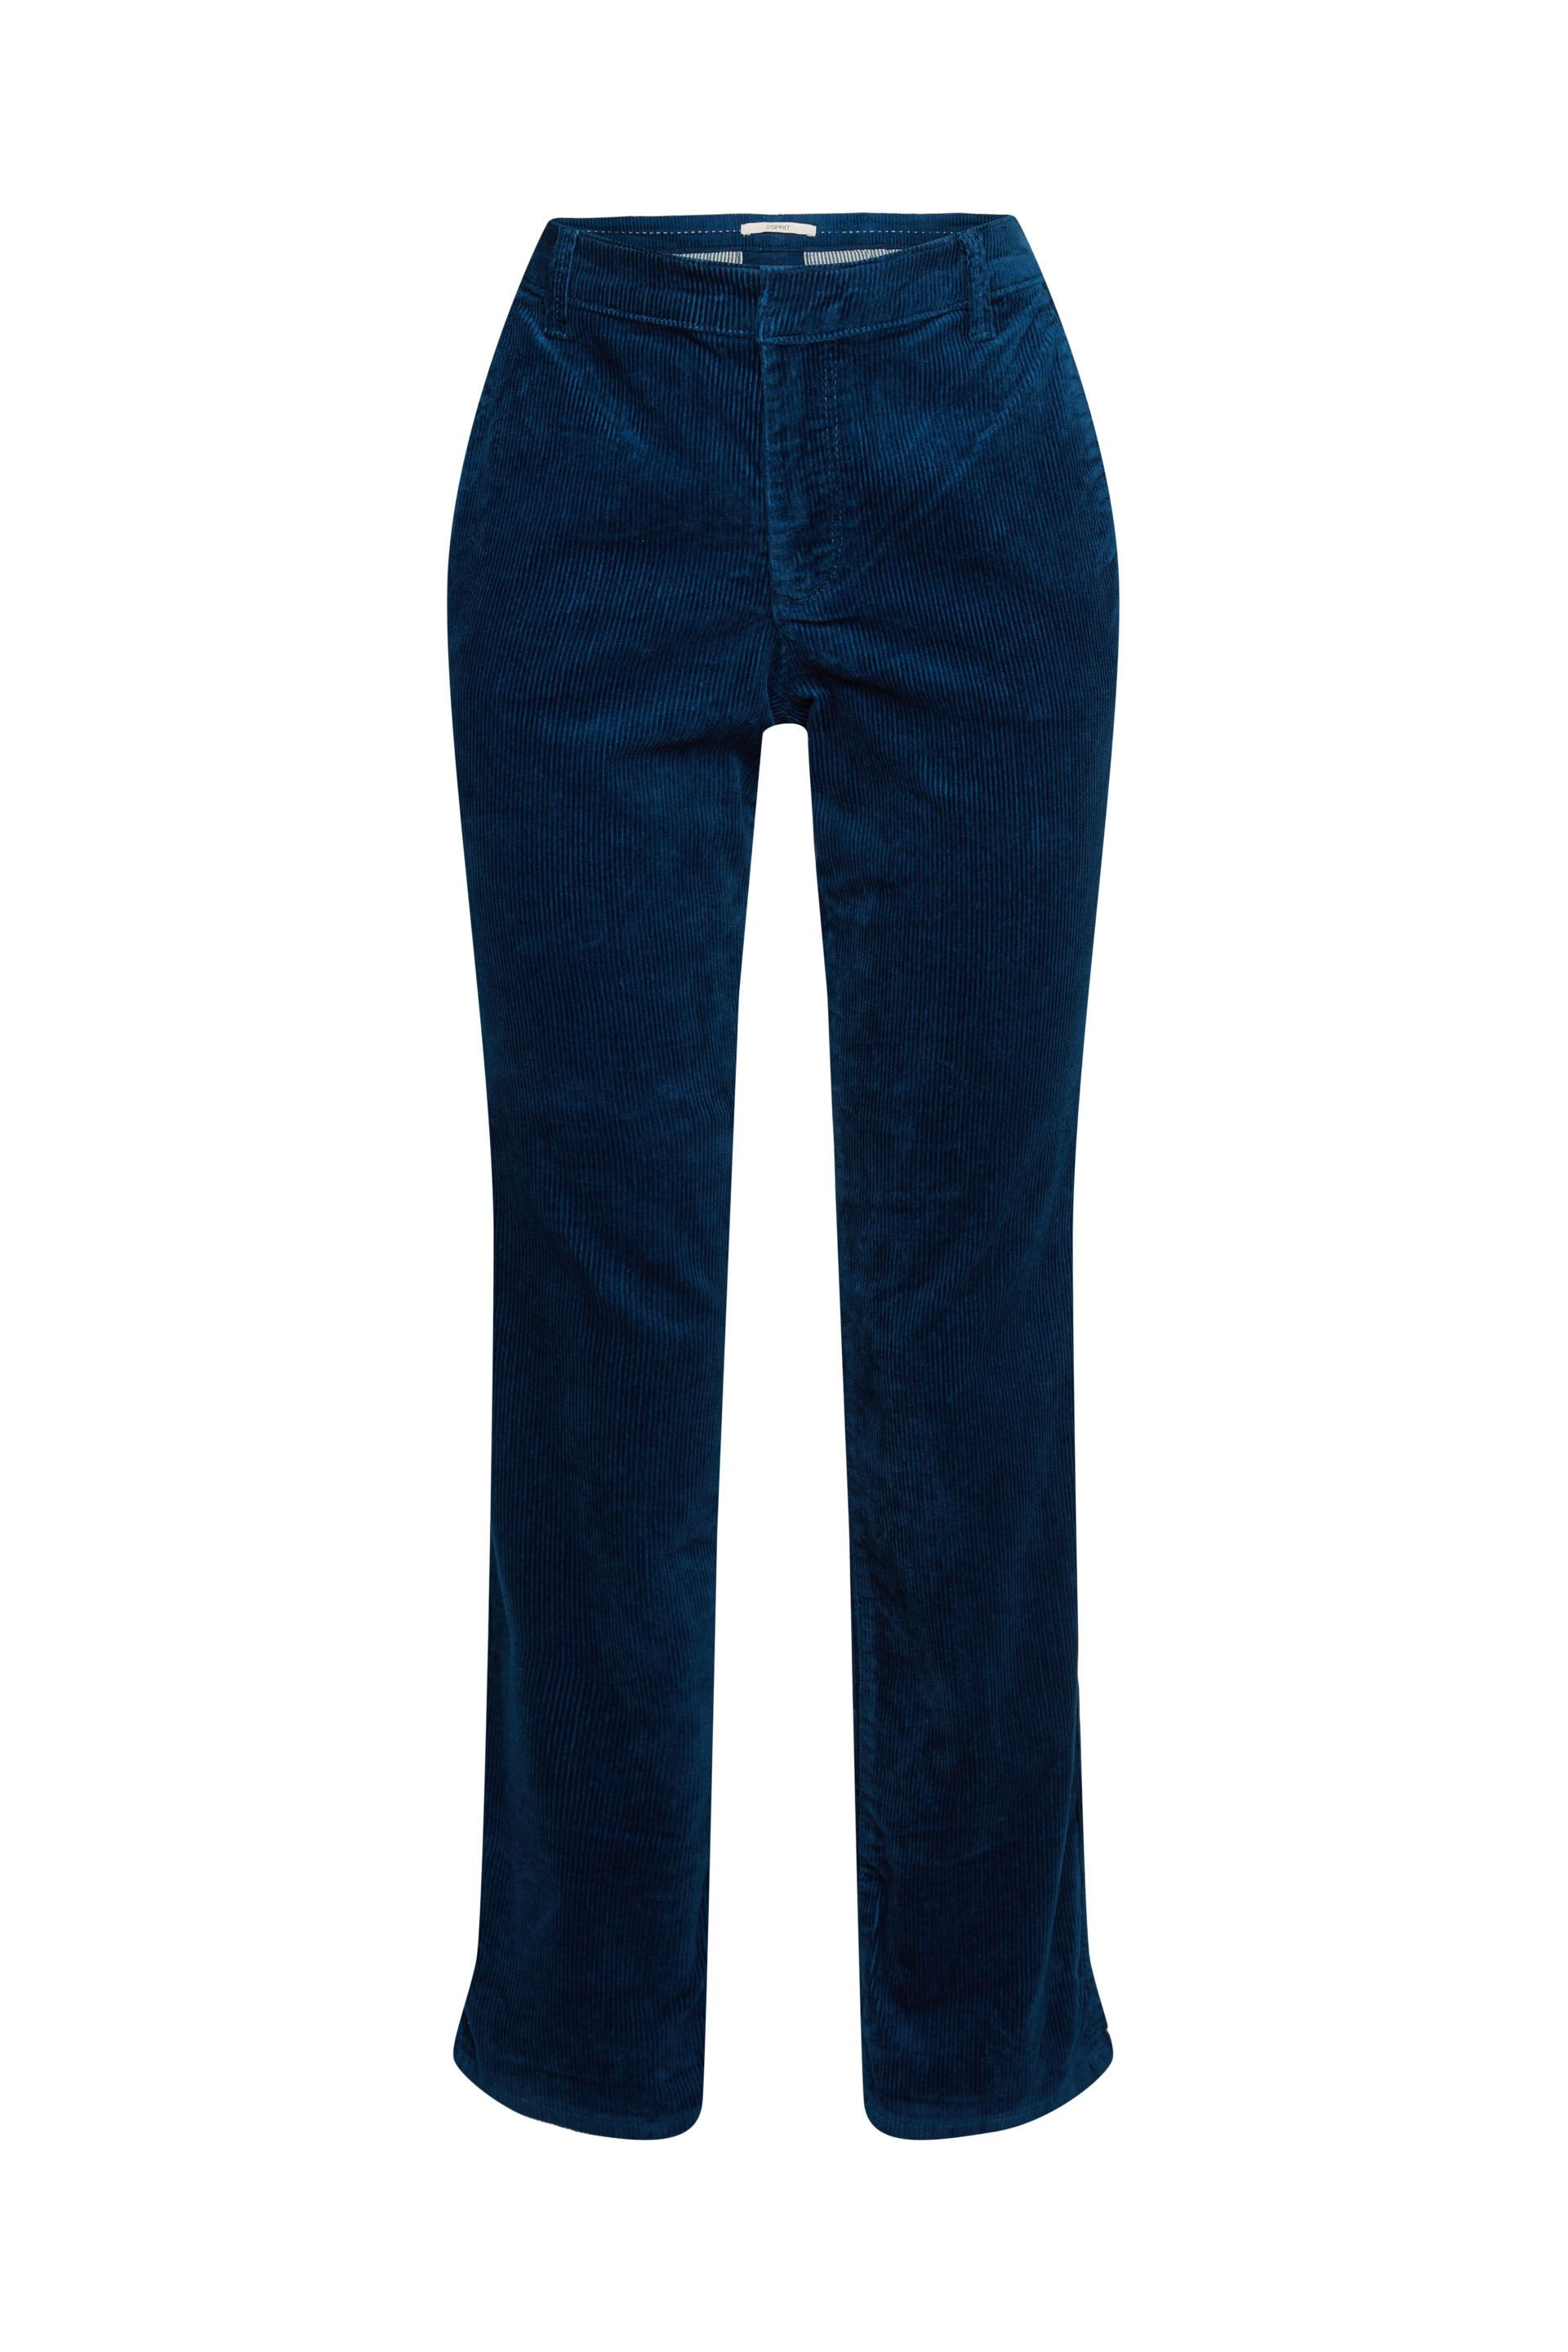 Pantalone in velluto di cotone, Denim, large image number 0